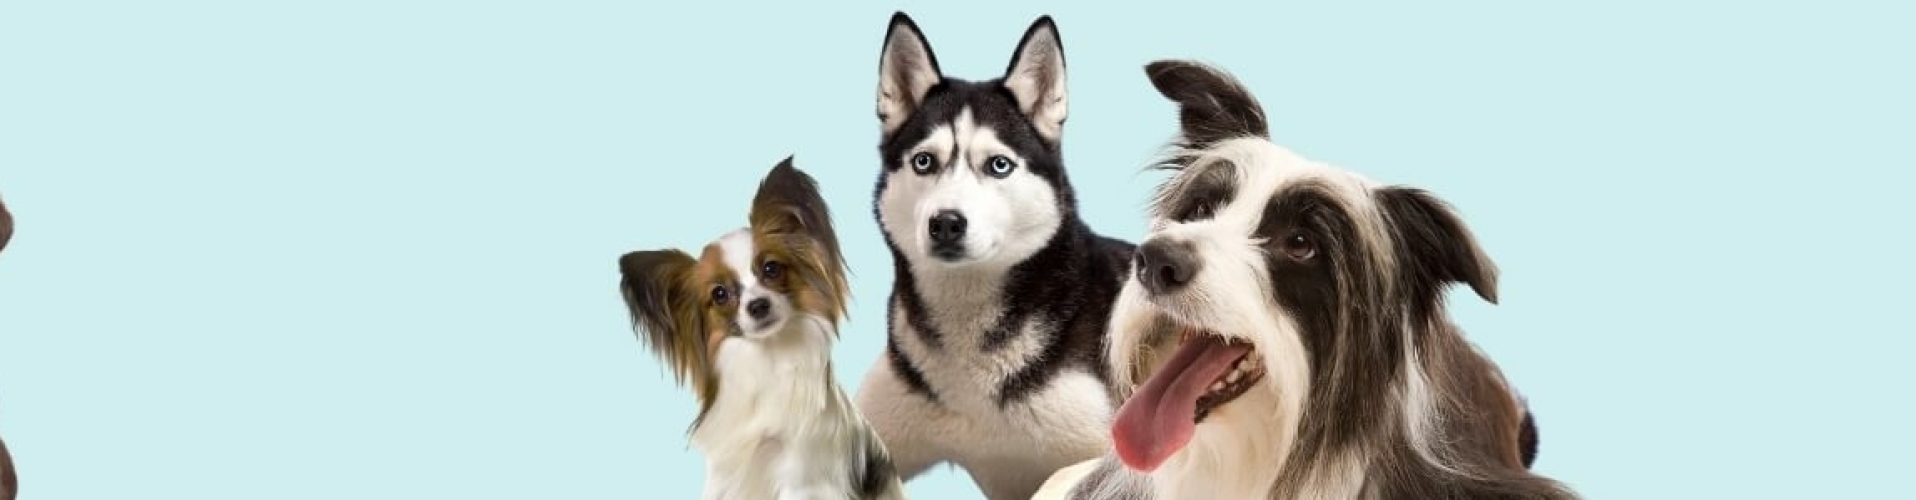 Online hondencursussen hondenschool voor thuis trainen met je hond of puppy